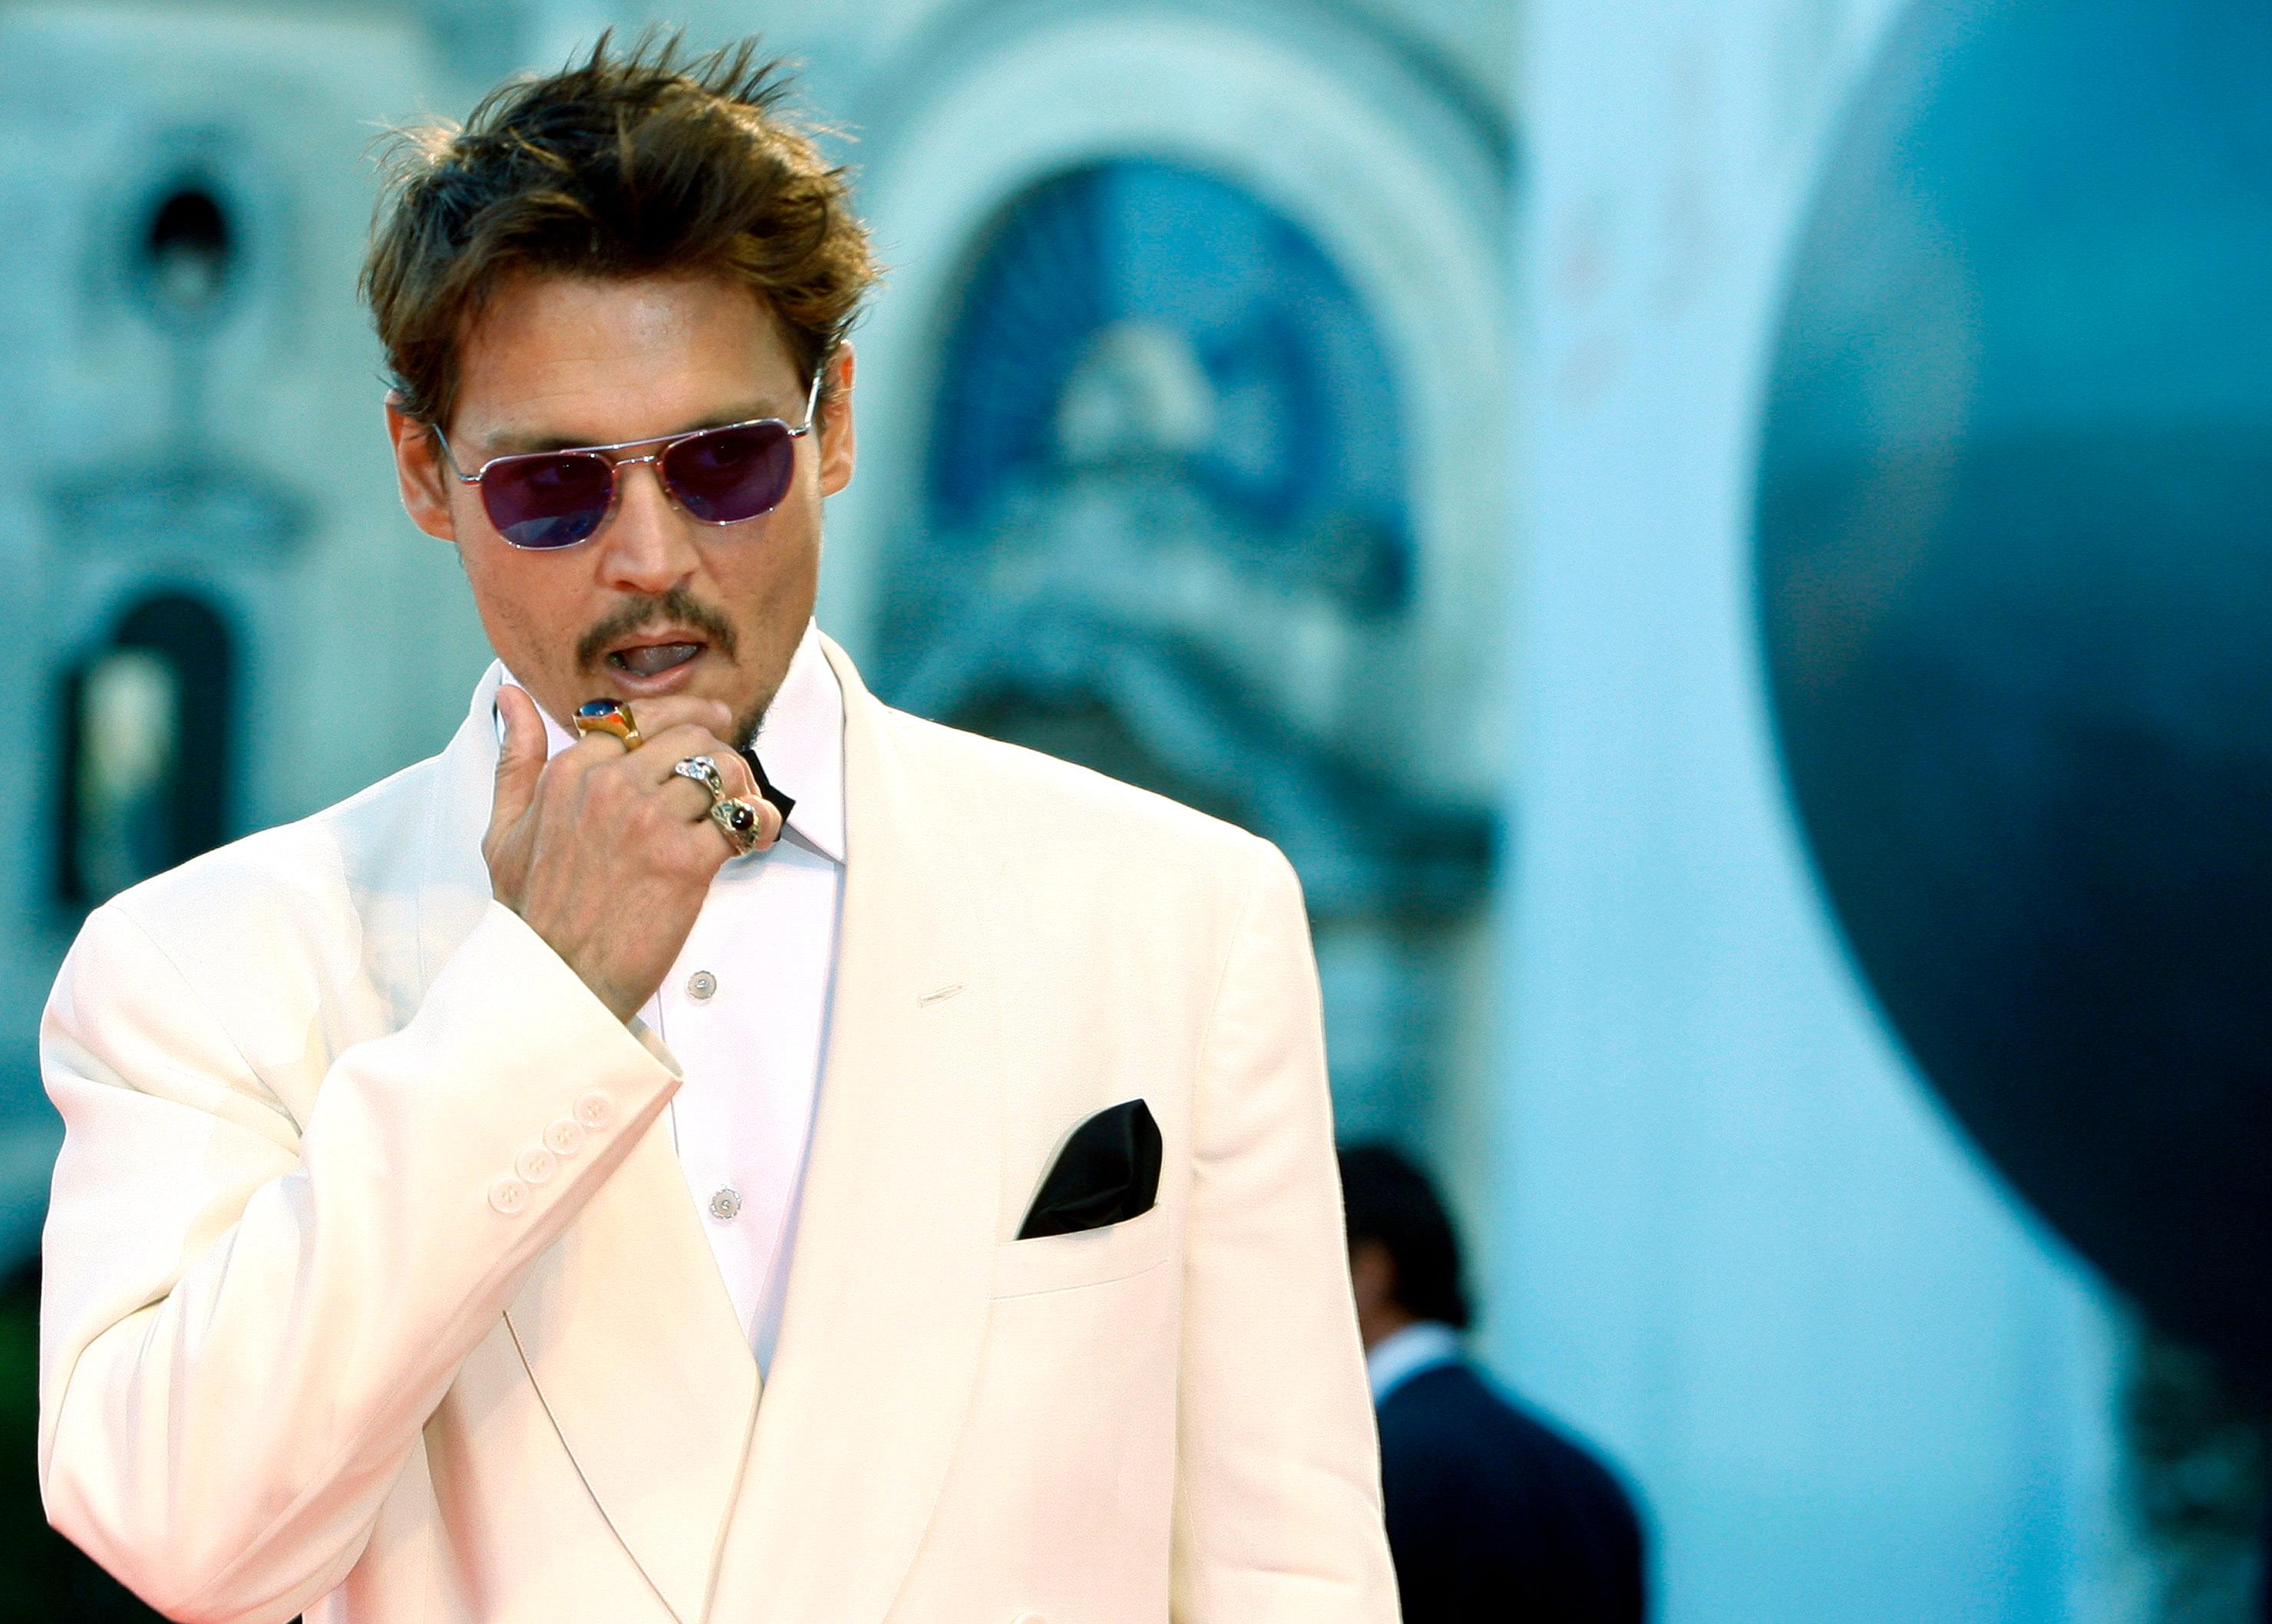 FILMFESTIVAL-KLAR: Depp valgte en langt mer klassikk rød løper-look til filmfestivalen i Venezia i 2007.